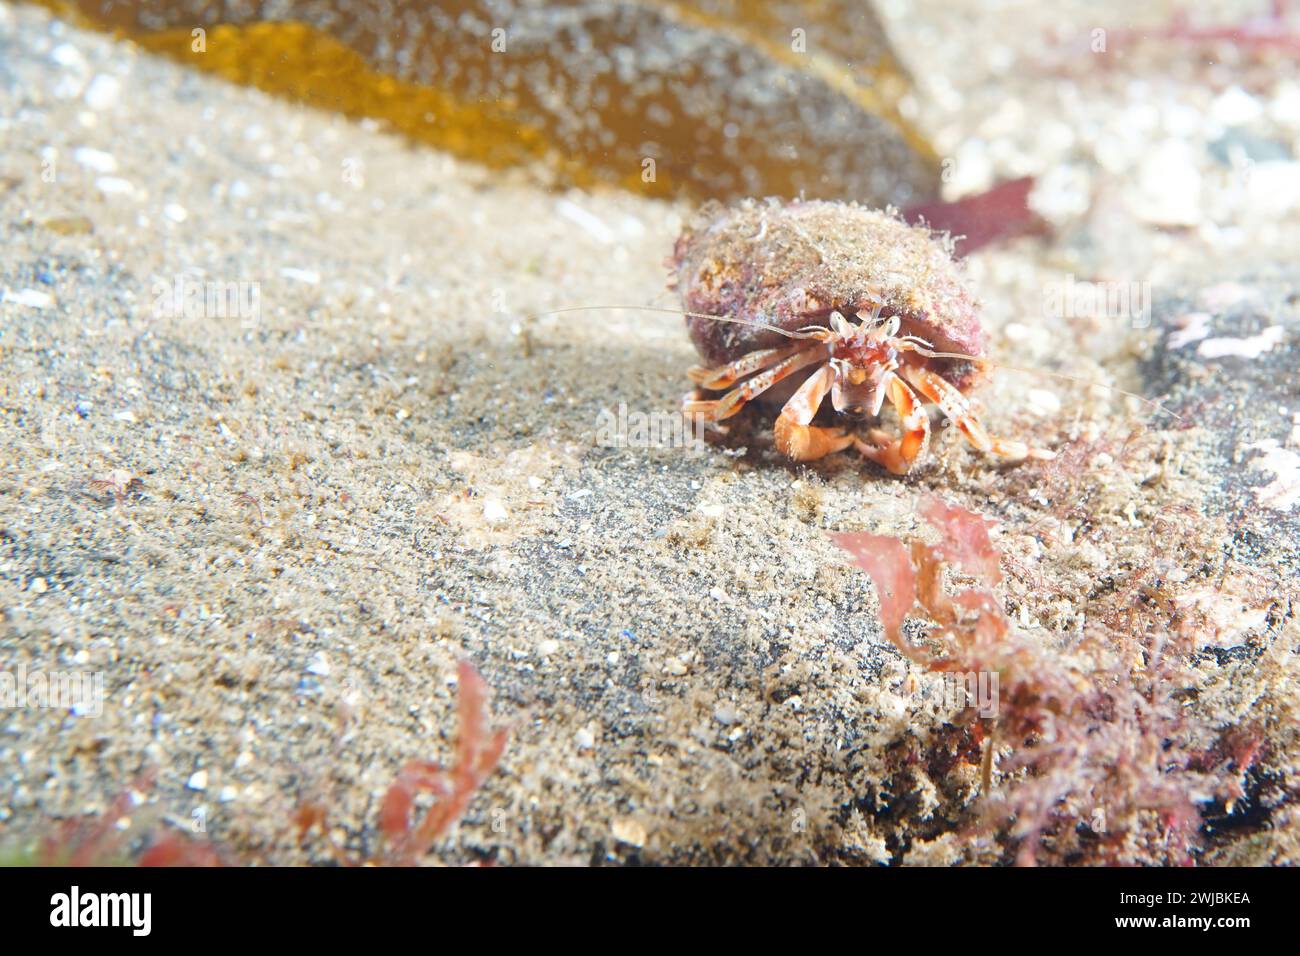 Un crabe ermite assis sur un rocher dans la mer du Nord. Le crabe ermite regarde le photographe et a ses griffes cachées sous sa coquille. Banque D'Images